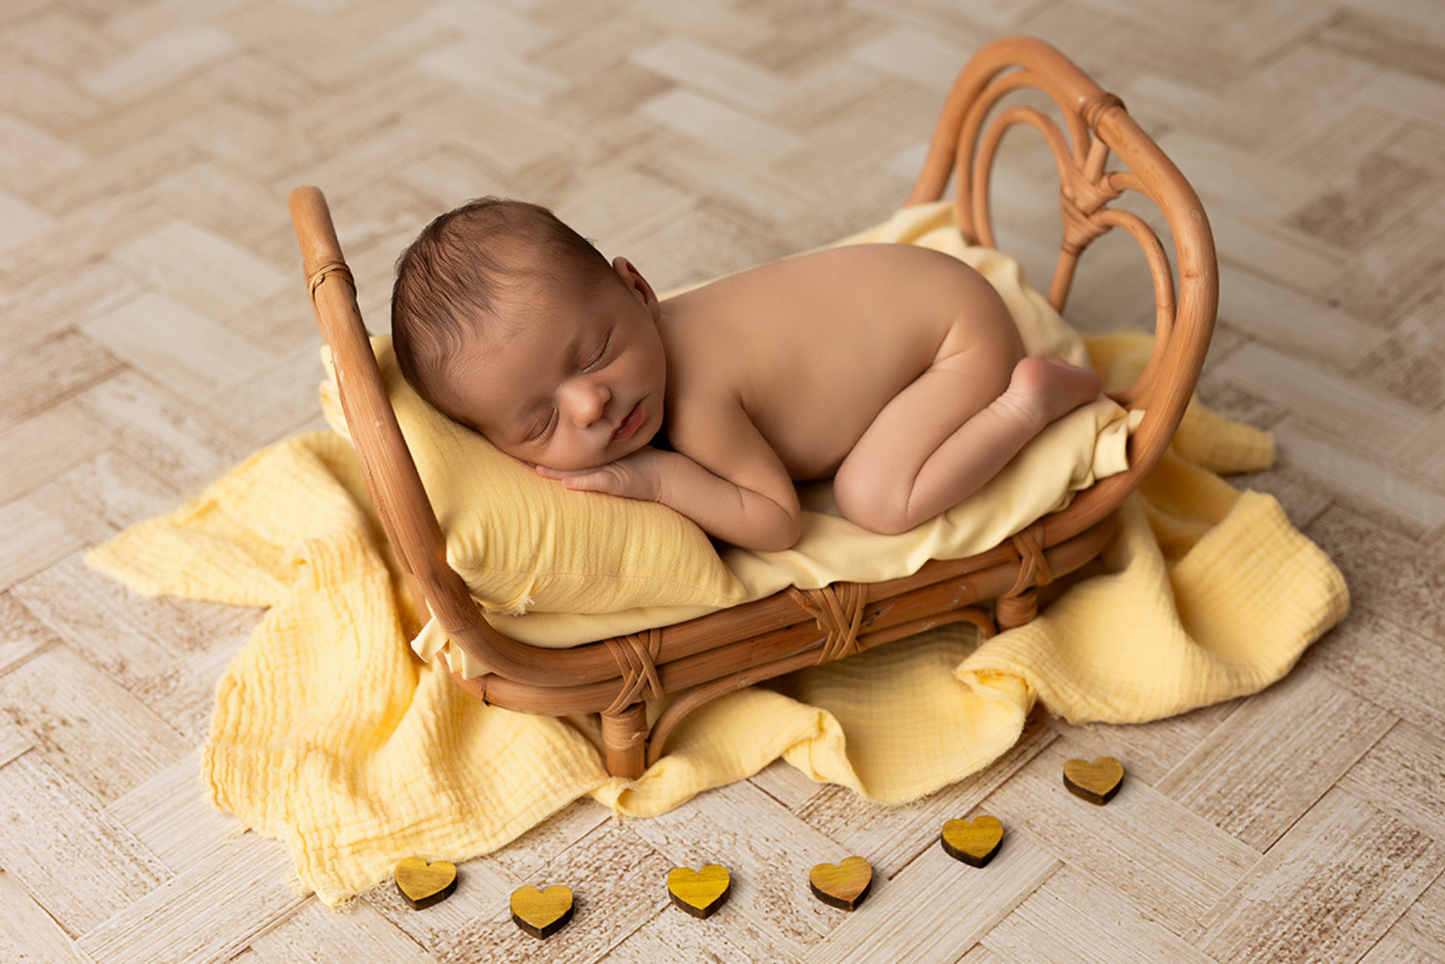 Sleeping baby cradled in rattan prop on yellow blanket, wooden floor setting.